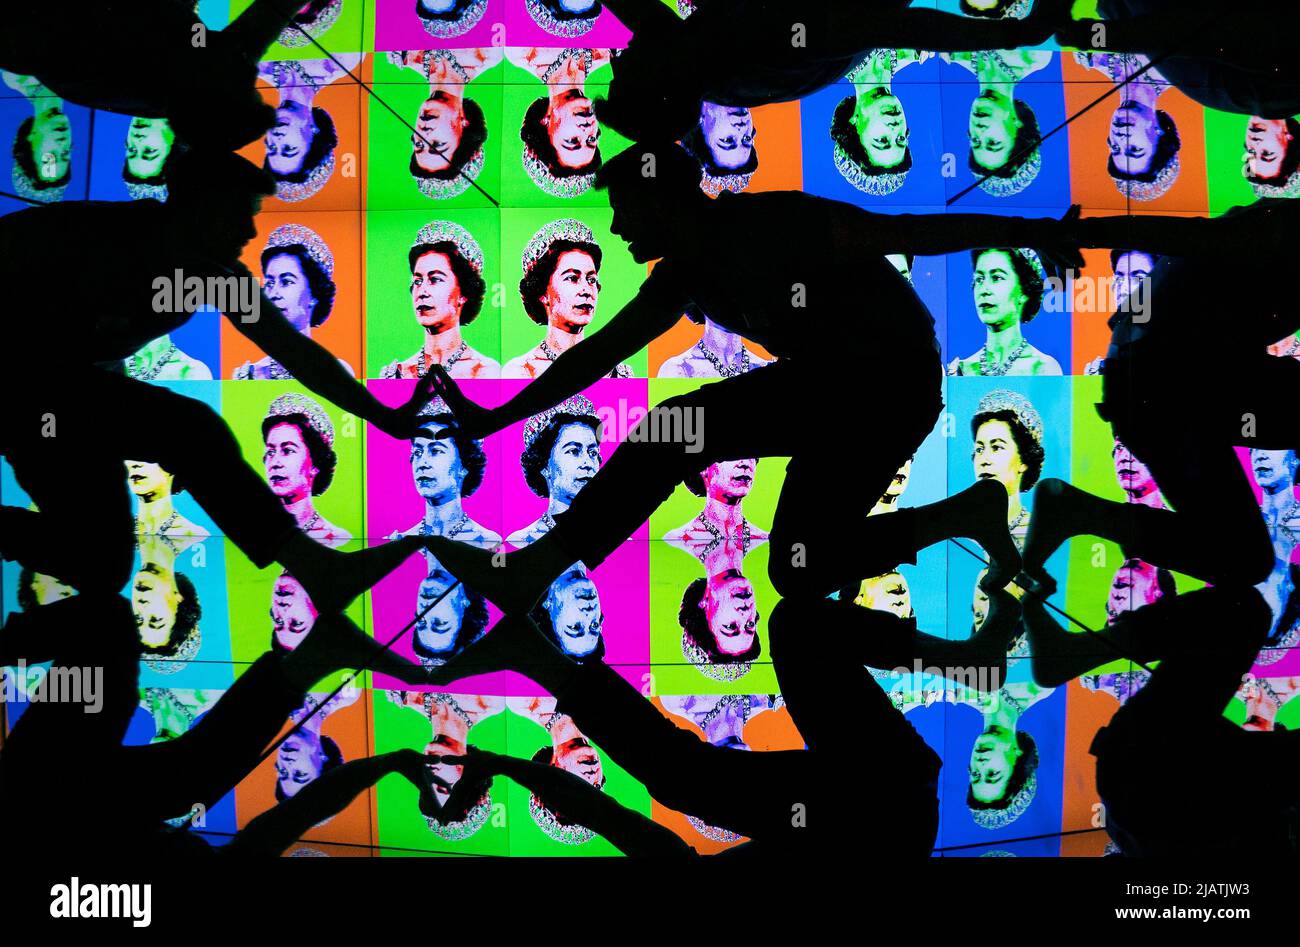 La guida turistica Josh Knowles guarda da vicino una nuova grafica pop art colorata della Regina nel Caleidoscopio Gigante al Camera Obscura e World of Illusions di Edimburgo, per celebrare il Giubileo del platino. Data foto: Mercoledì 1 giugno 2022. Foto Stock